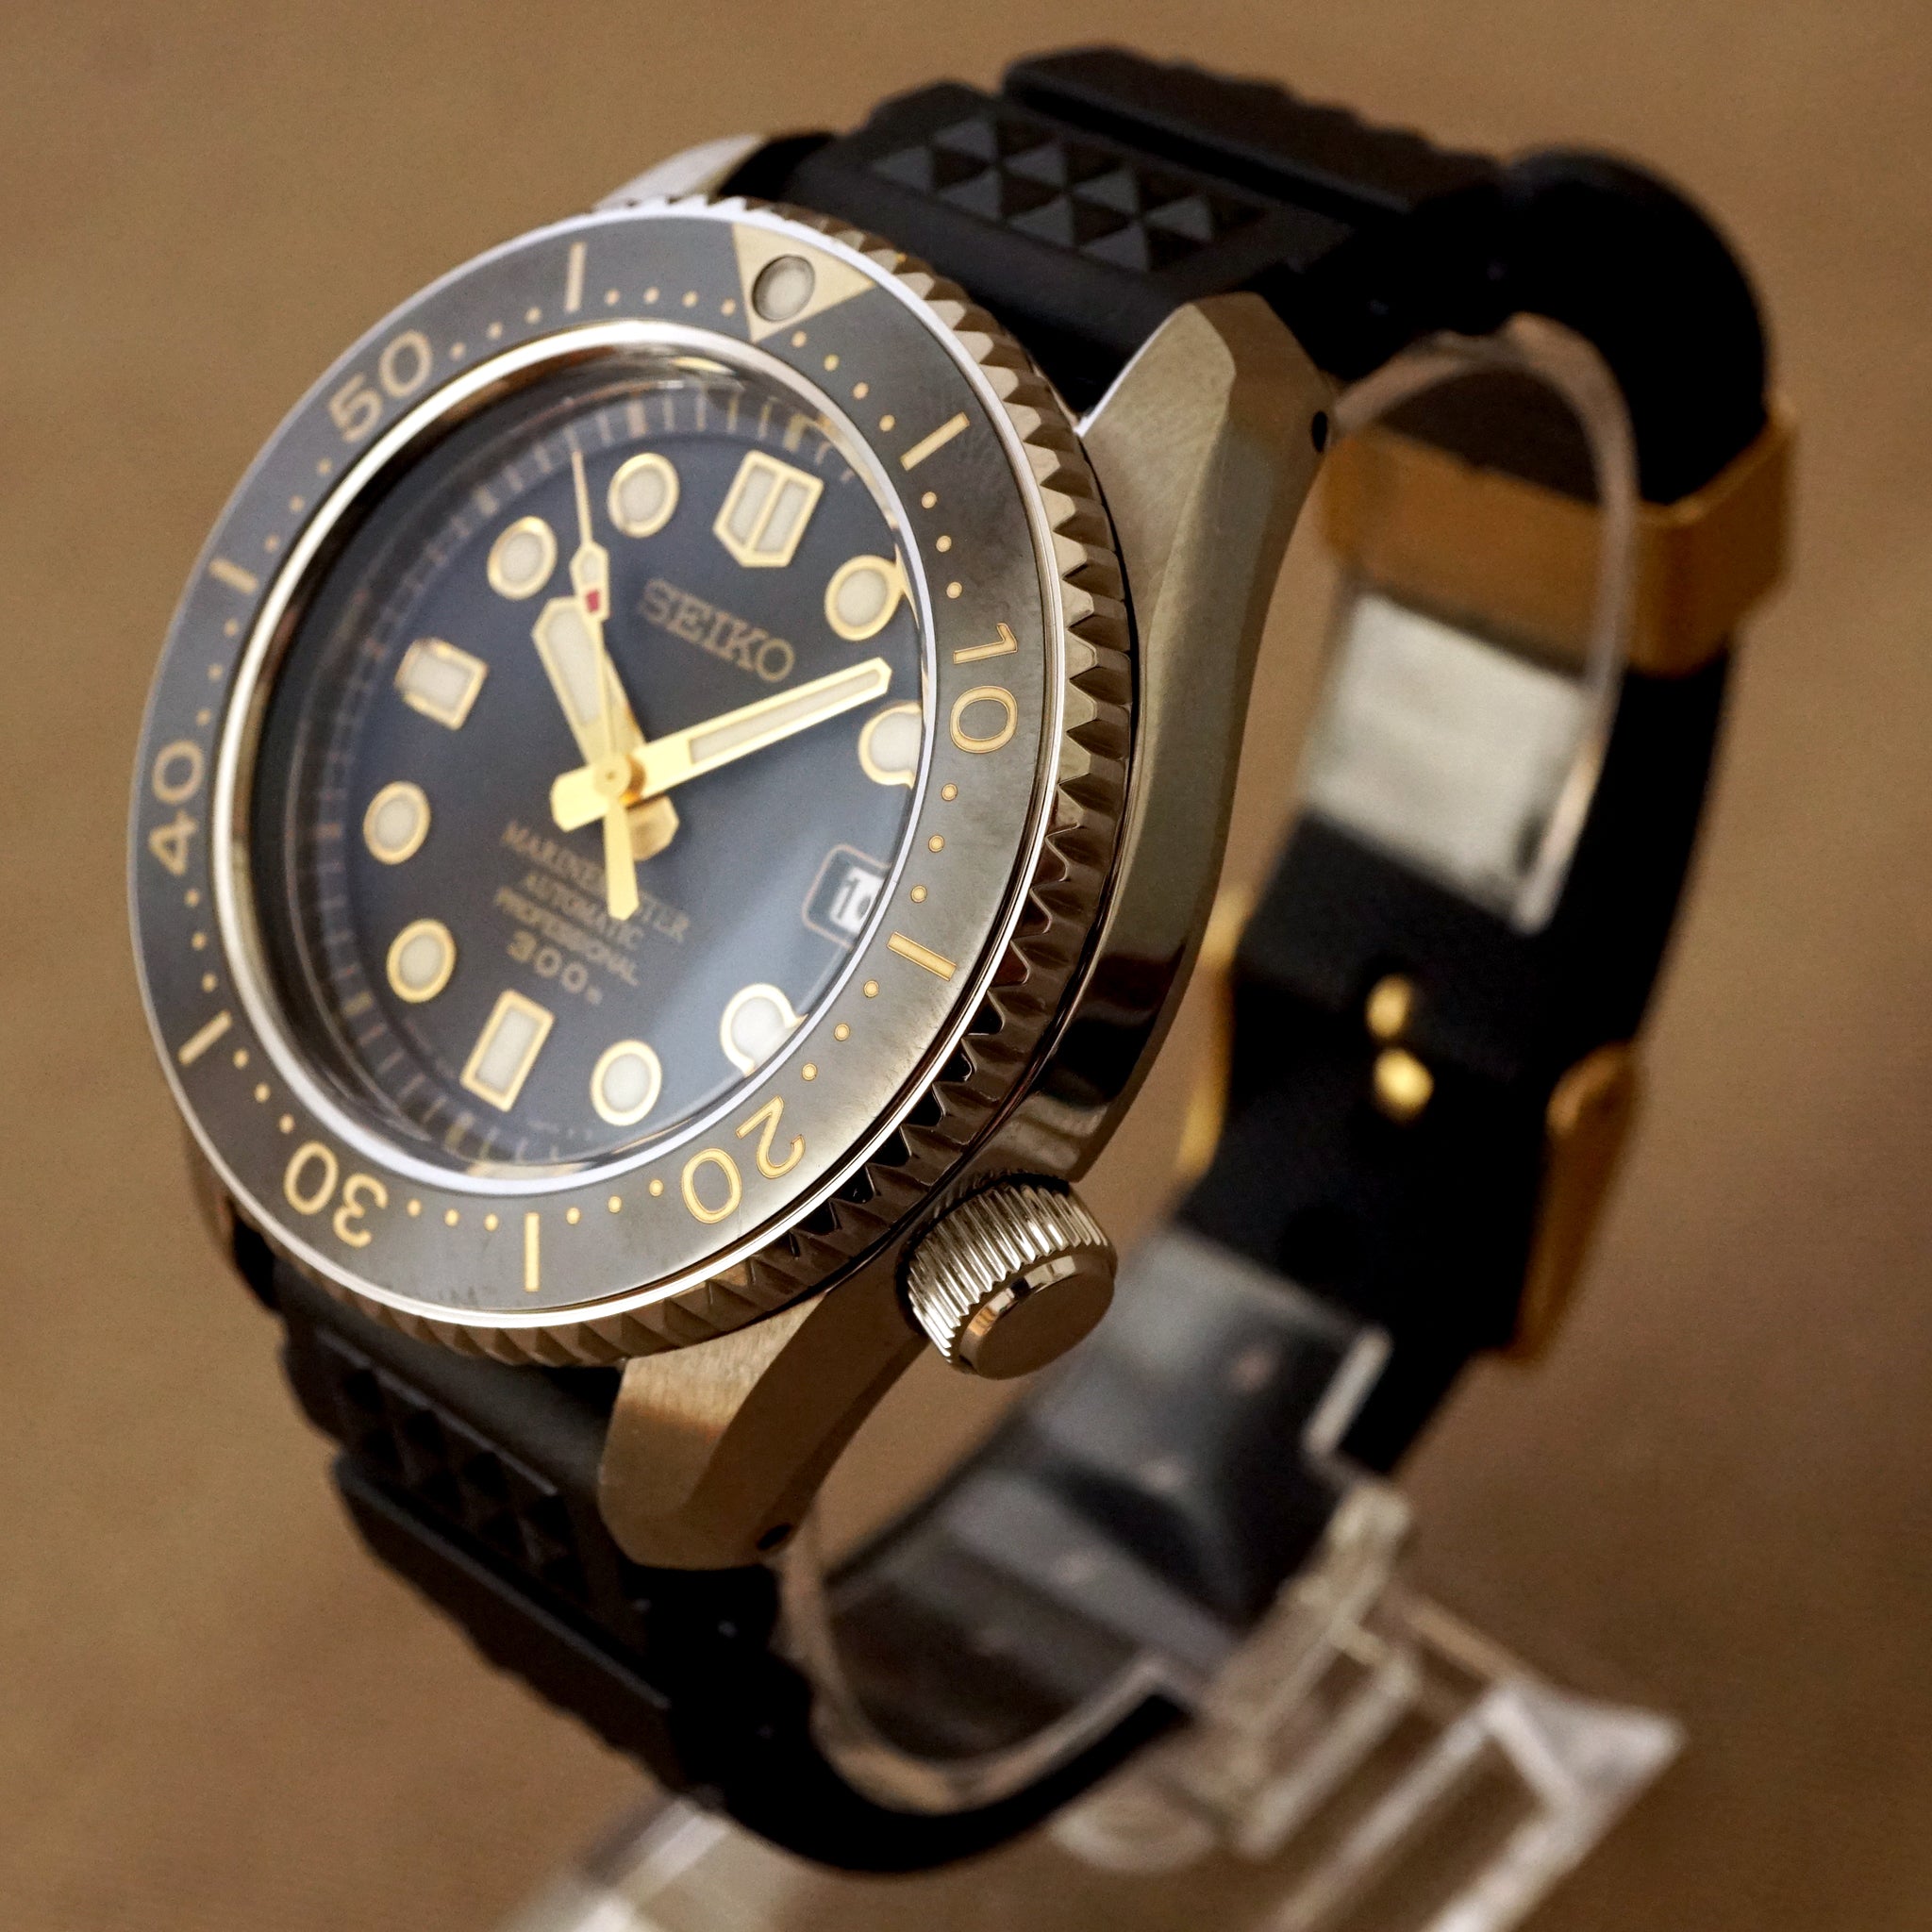 seiko marine master watch, sälja stort UPP TILL NUM AV -  